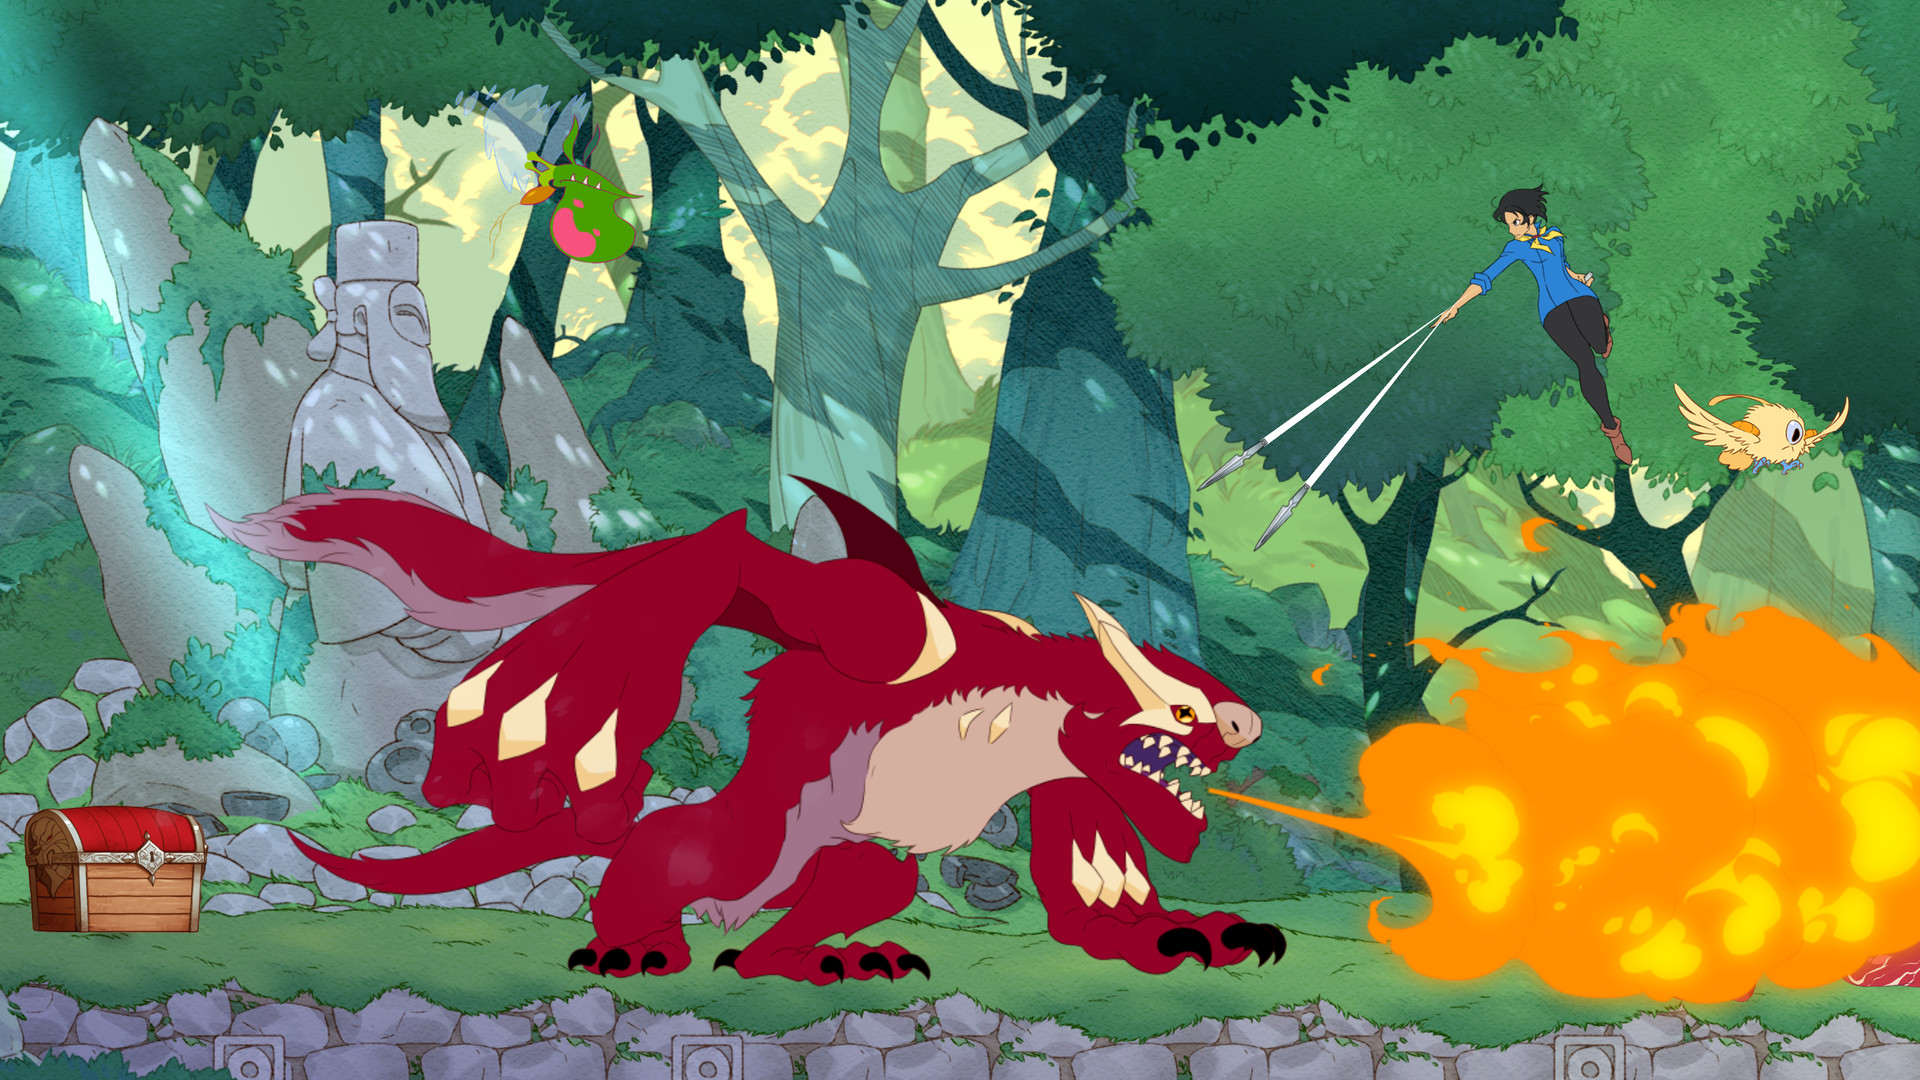 最佳動漫遊戲：戰鬥廚師旅。圖像顯示了可怕的紅毛茸茸的生物呼吸火。